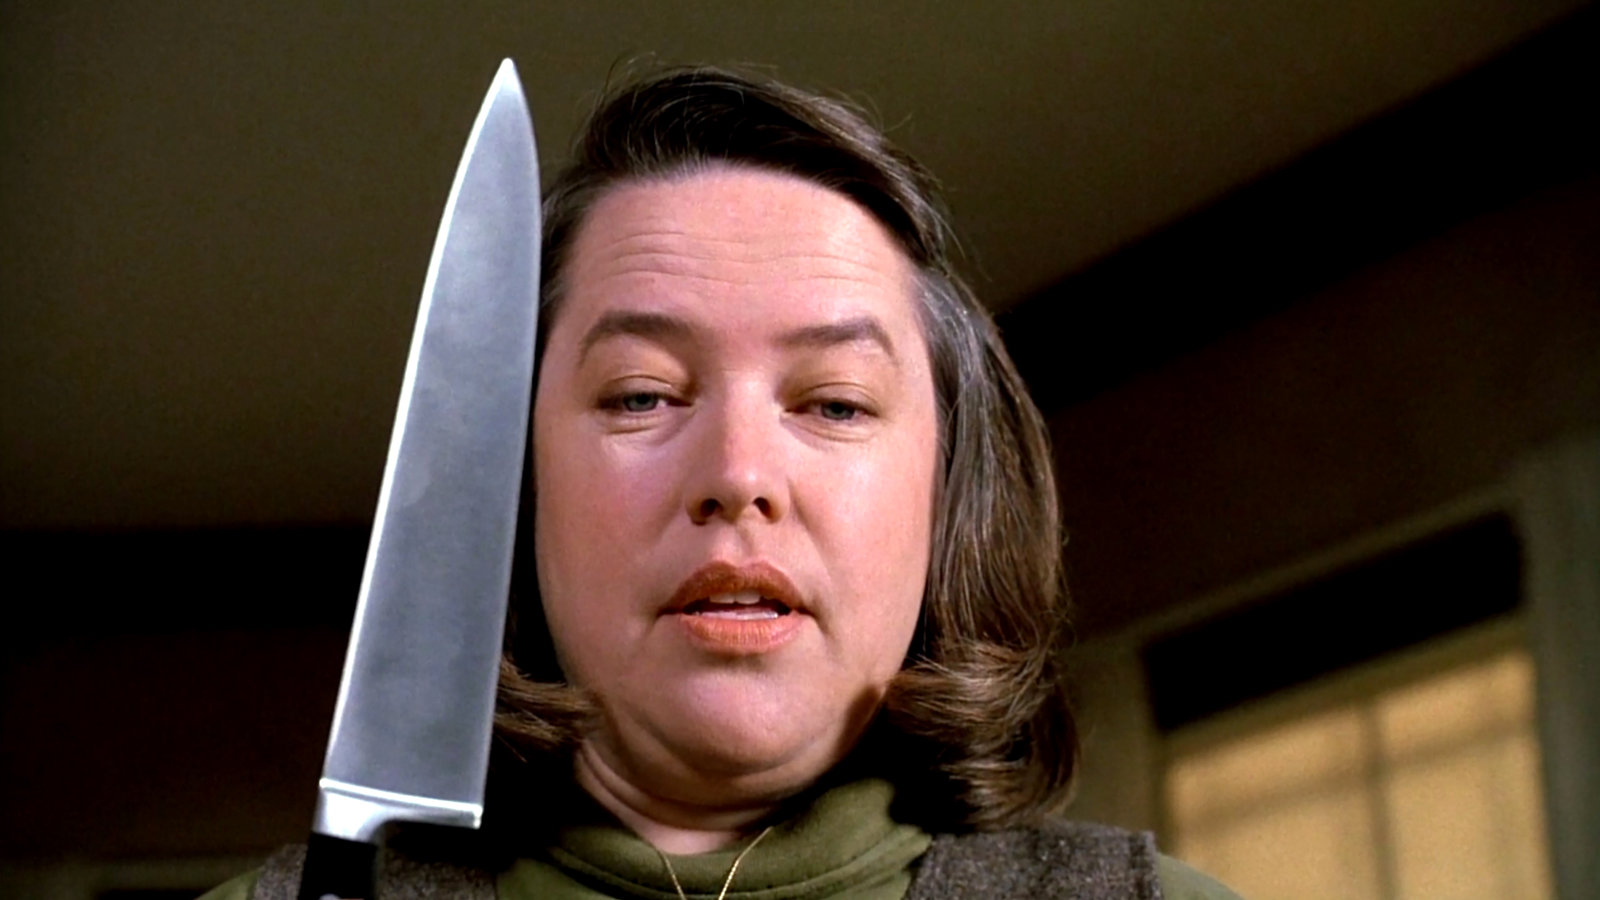 MISERY: Annie Wilkes (Kathy Bates) steht in einem verdunkelten ZImmer, hält ein großes Küchenmesser in der Hand und schaut bedrohlich herab.